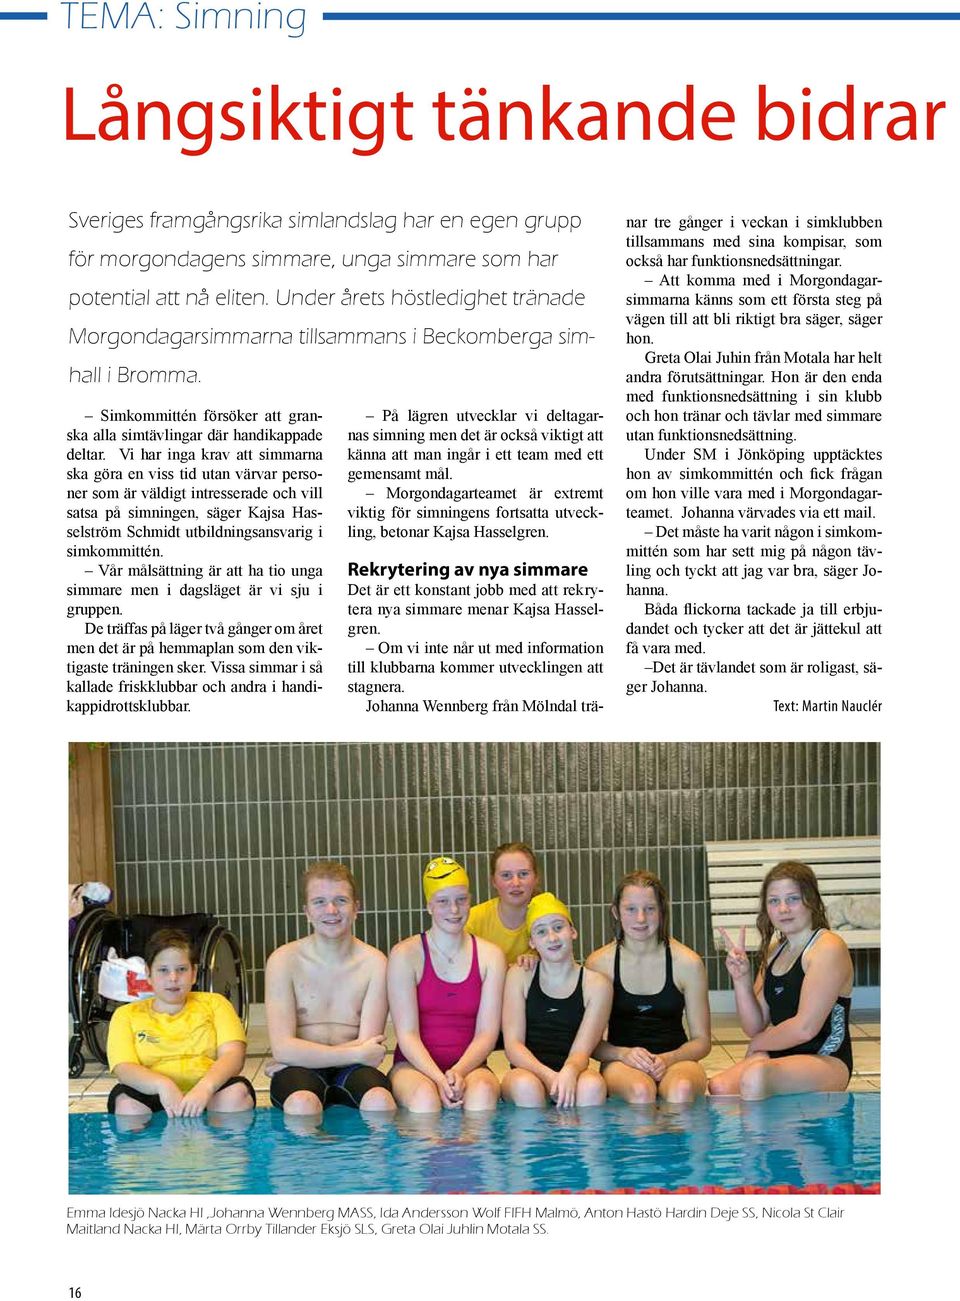 Vi har inga krav att simmarna ska göra en viss tid utan värvar personer som är väldigt intresserade och vill satsa på simningen, säger Kajsa Hasselström Schmidt utbildningsansvarig i simkommittén.